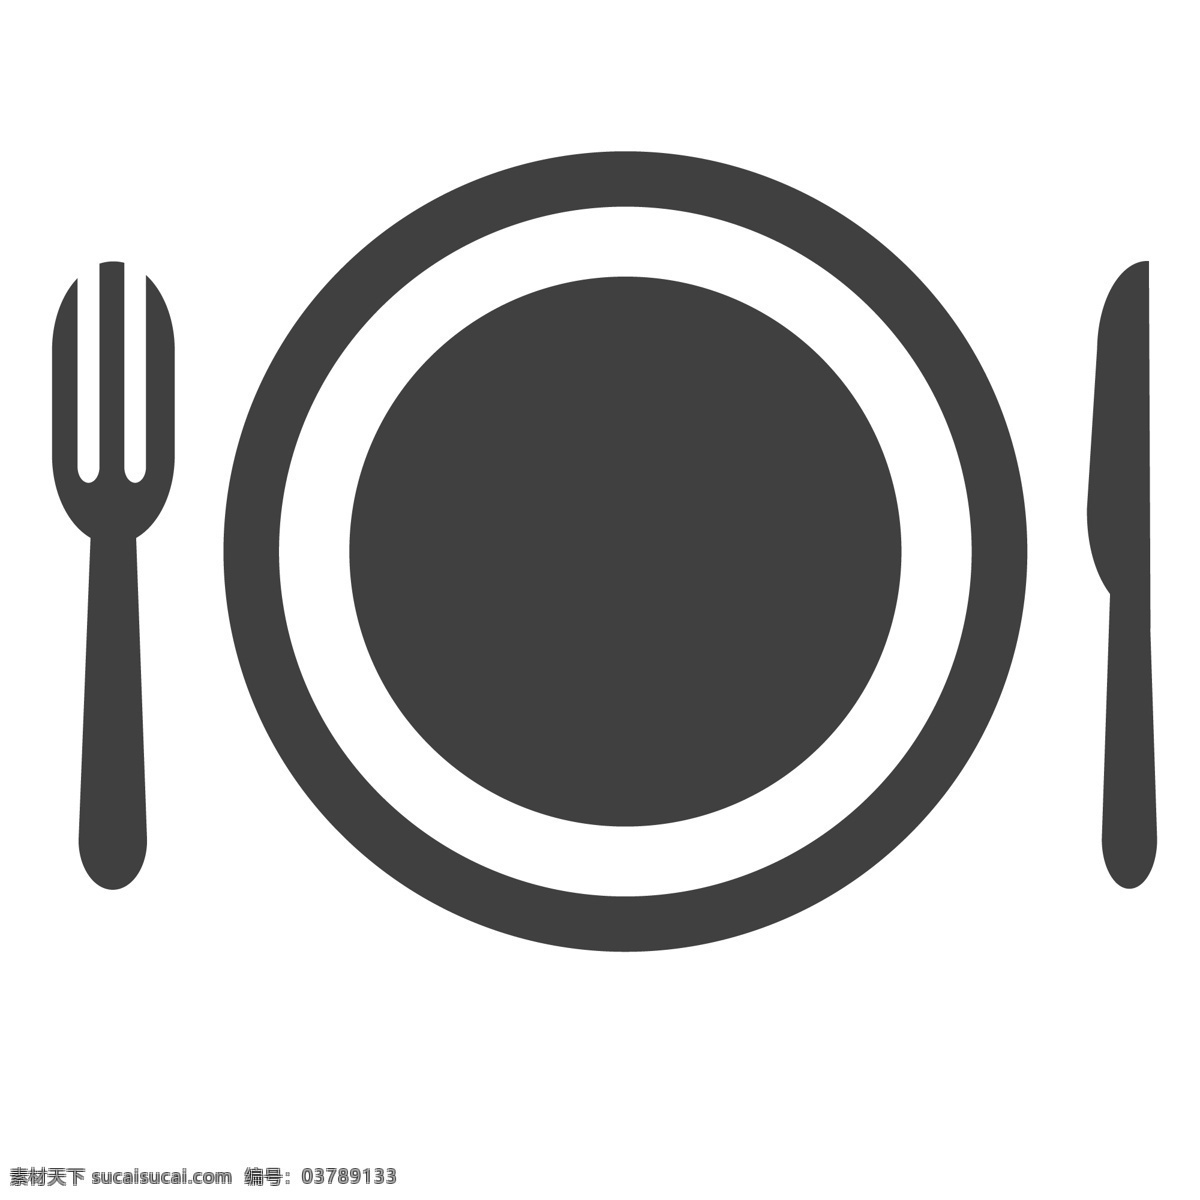 圆形 盘子 餐具 叉子 生活图标 卡通图标 黑色的图标 手机图标 智能图标设计